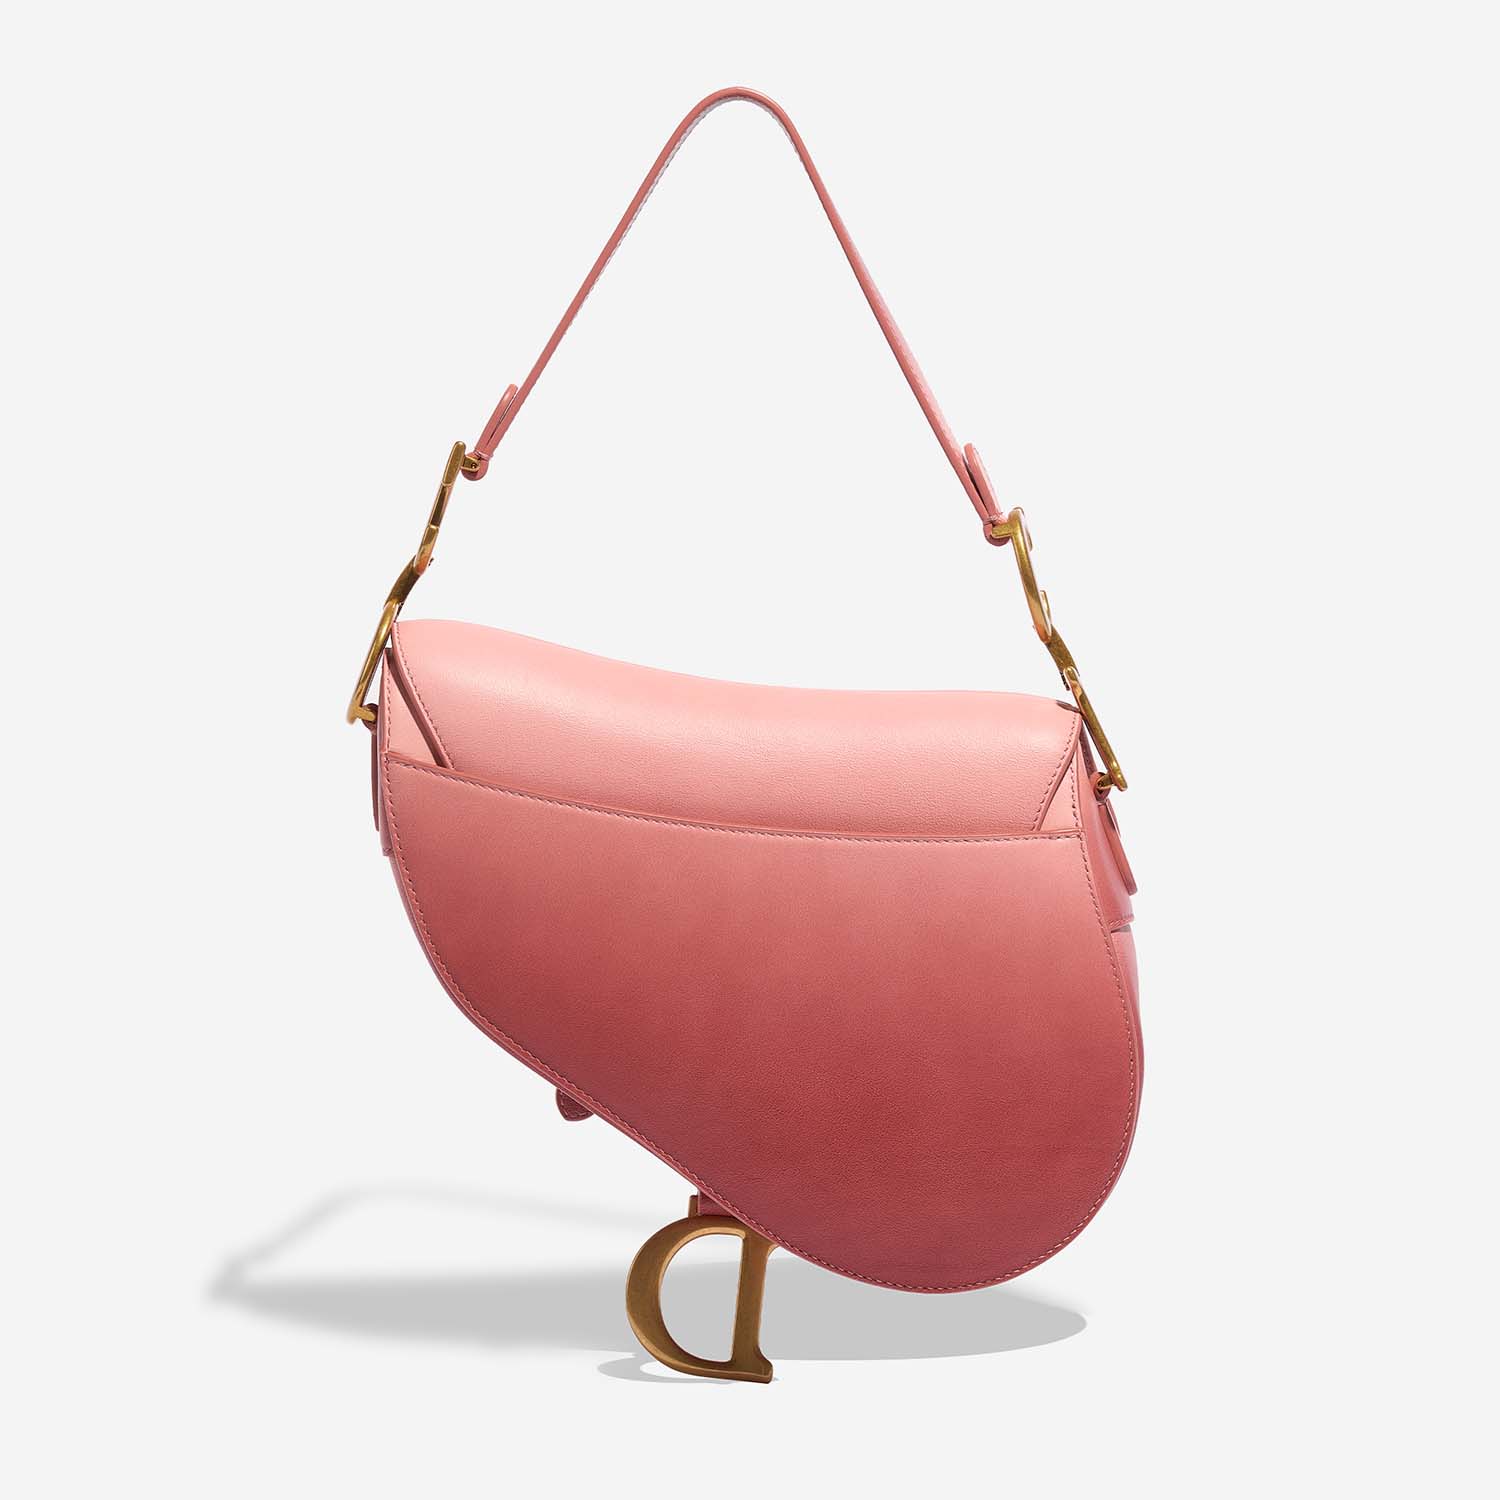 Dior Saddle Medium Pink Back | Verkaufen Sie Ihre Designertasche auf Saclab.com